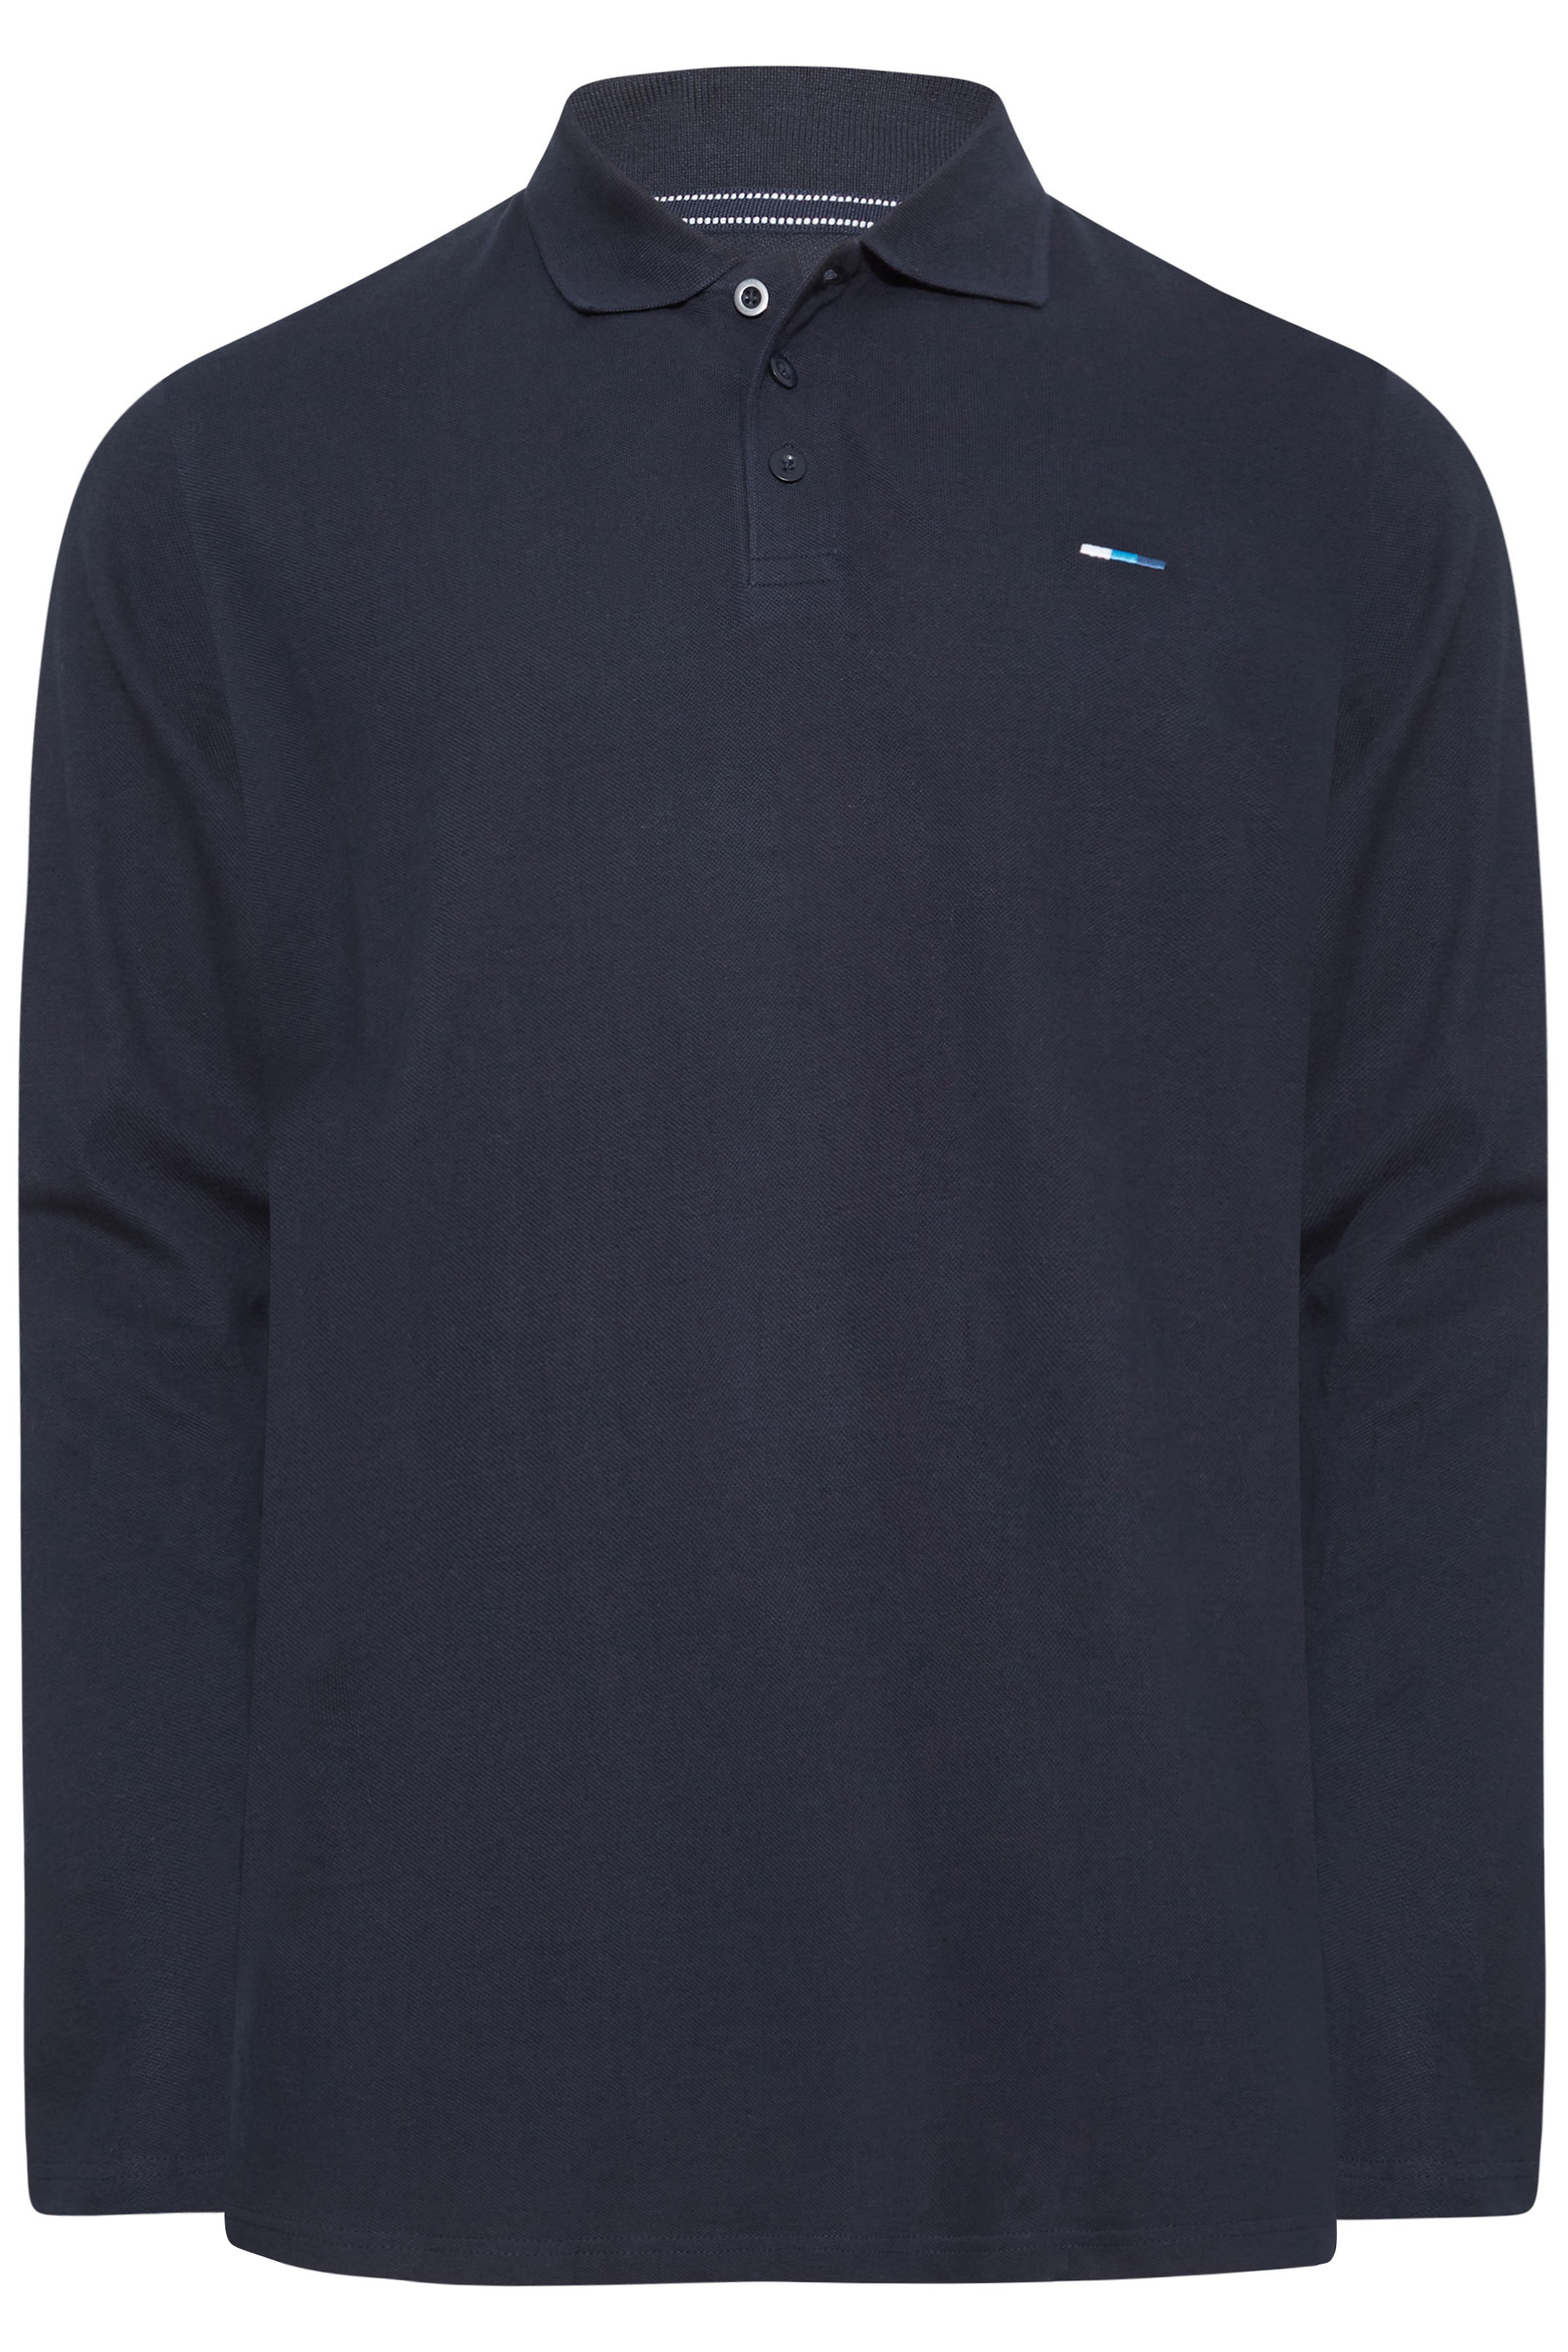 BadRhino Navy Blue Essential Long Sleeve Polo Shirt | BadRhino 3